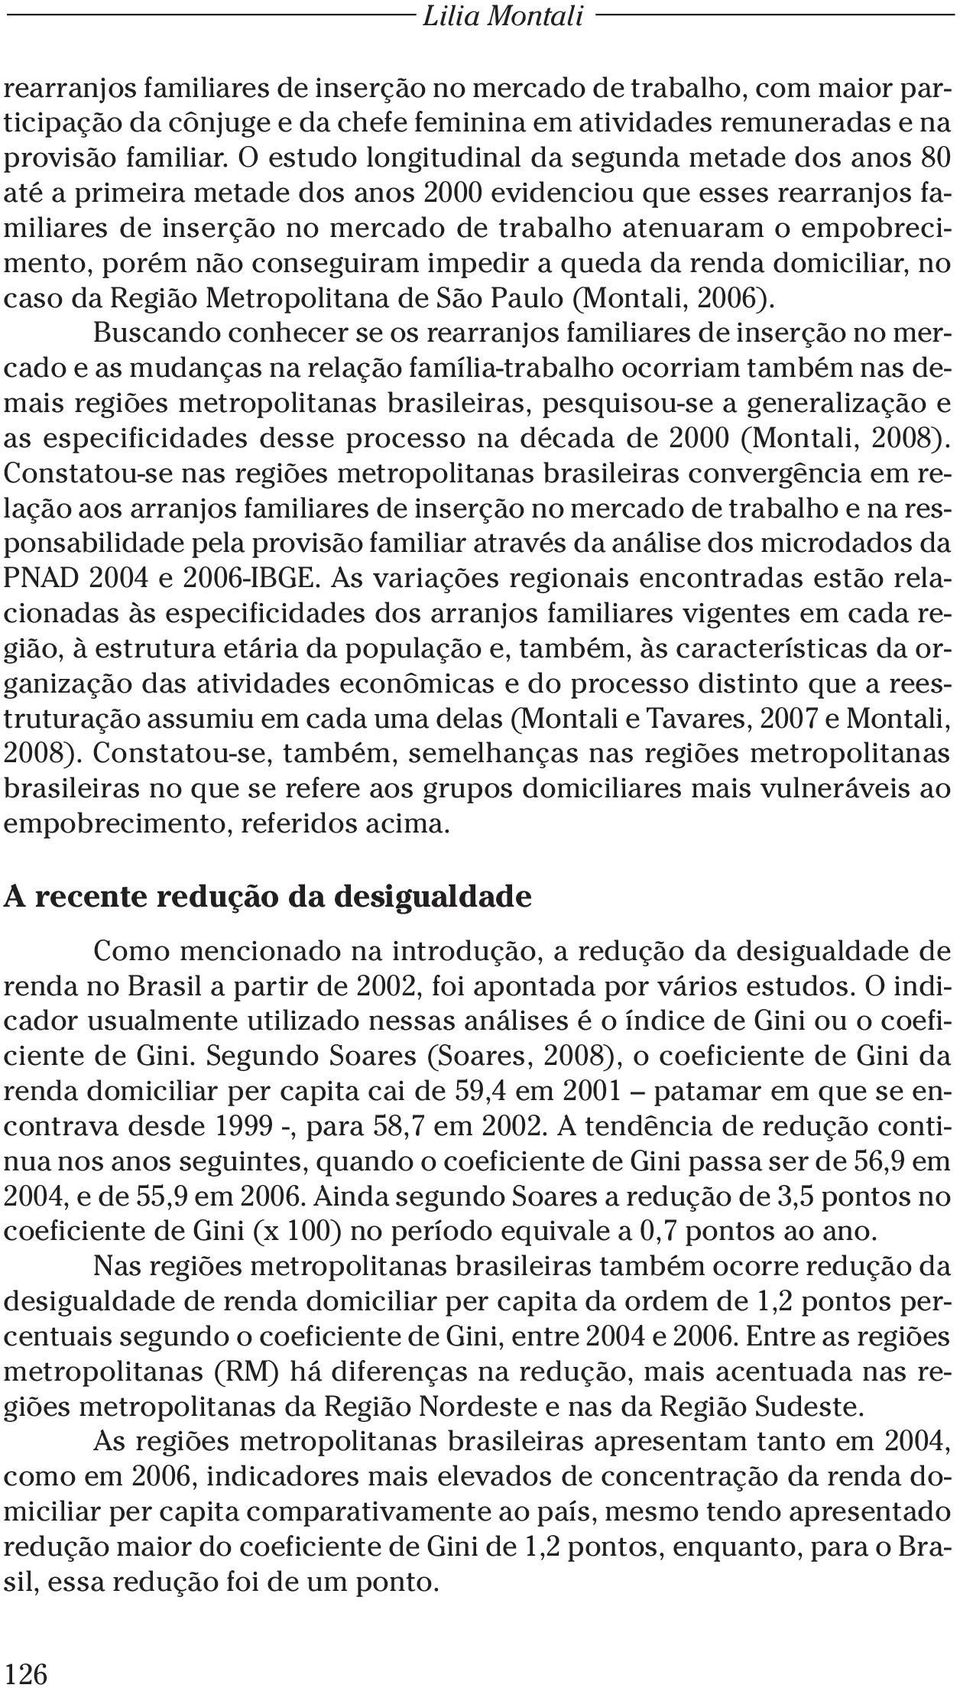 não conseguiram impedir a queda da renda domiciliar, no caso da Região Metropolitana de São Paulo (Montali, 2006).